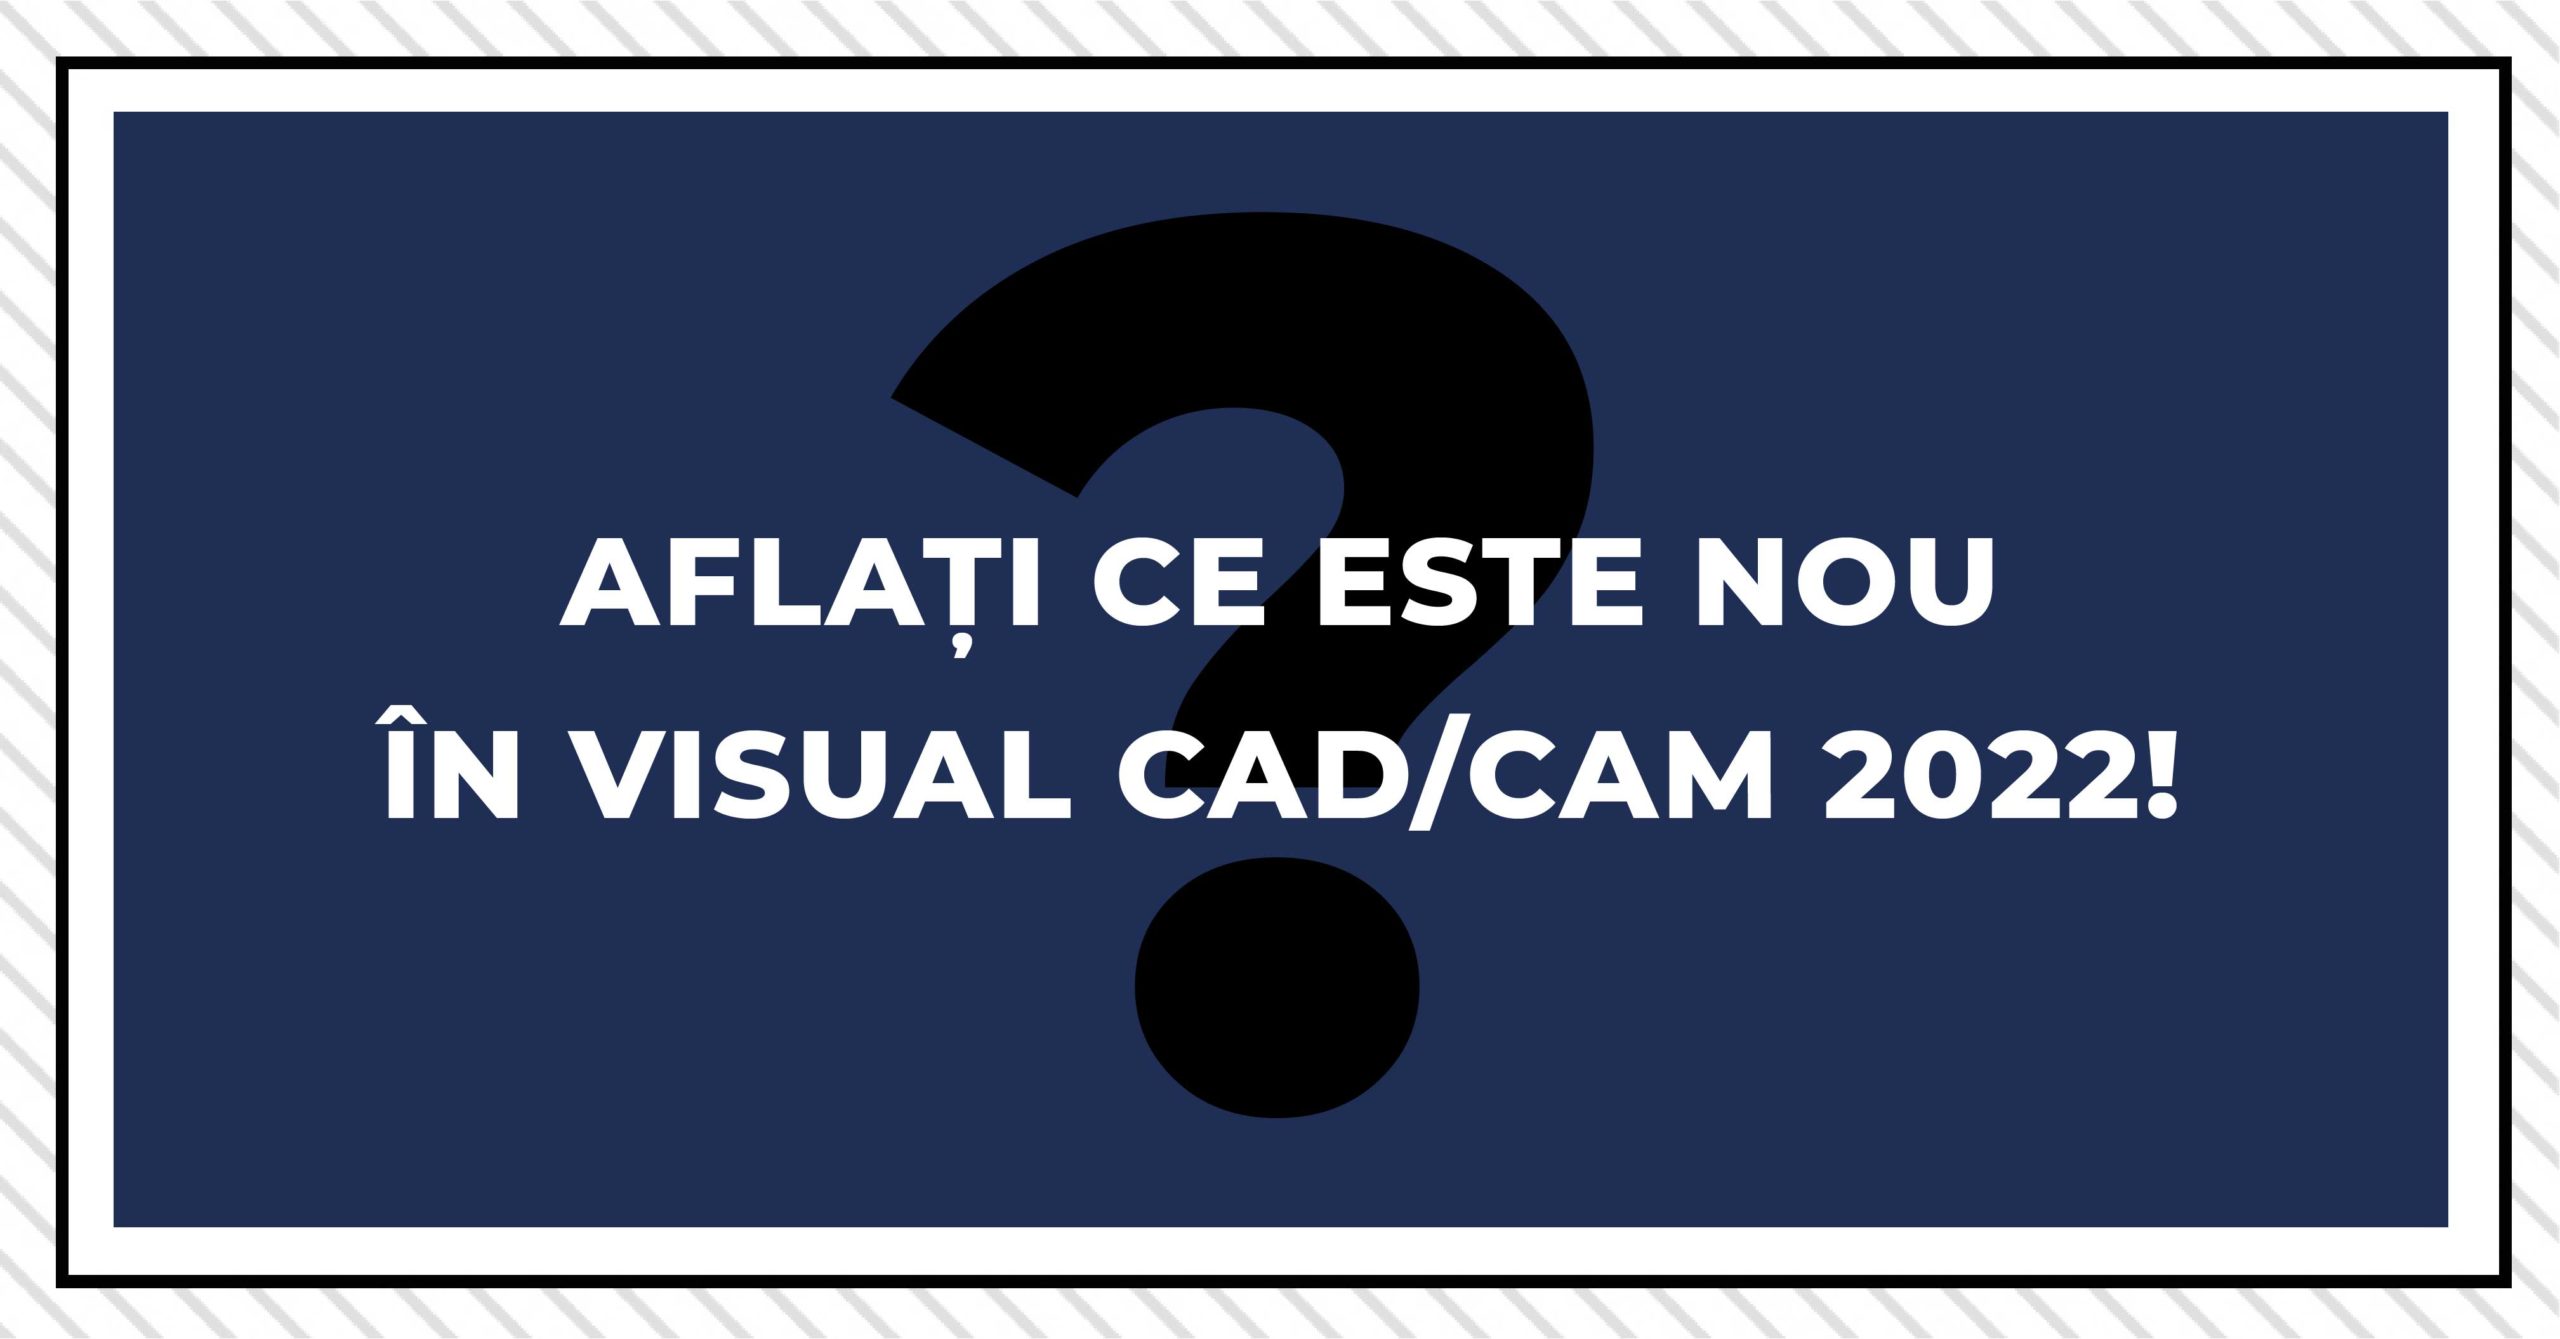 Aflați ce este nou în Visual CAD/CAM 2022!